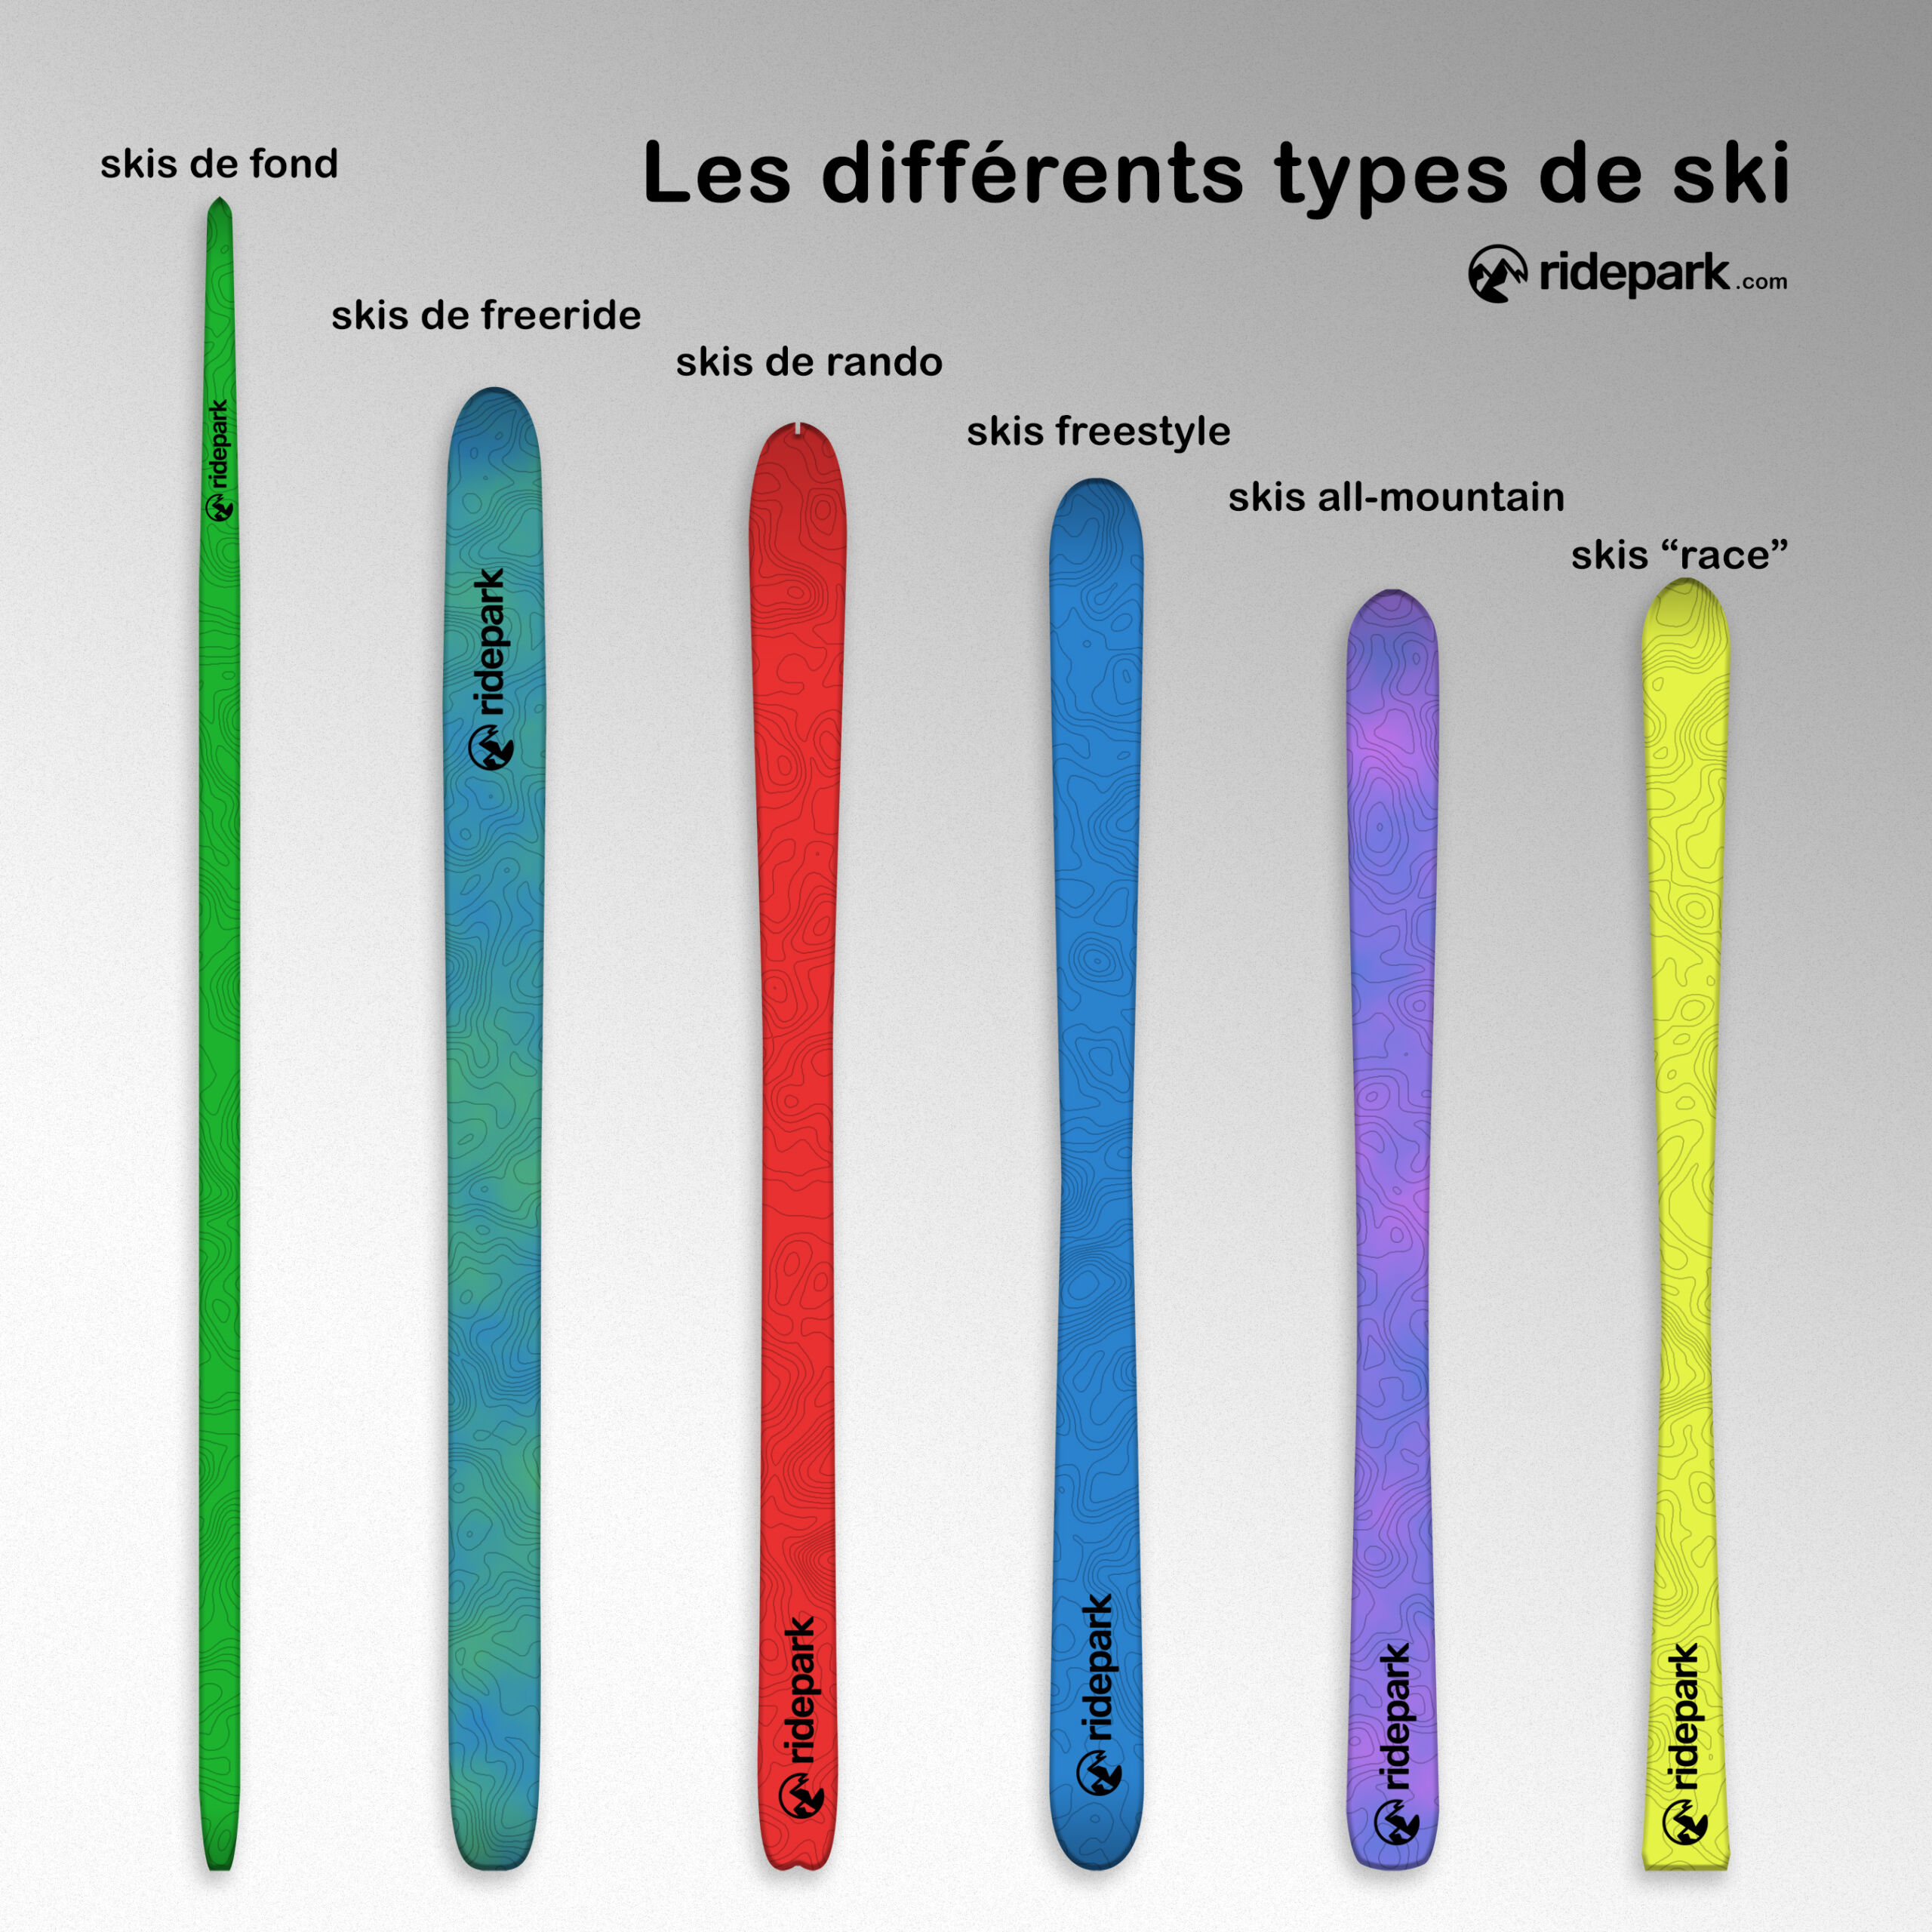 Les différents types de skis